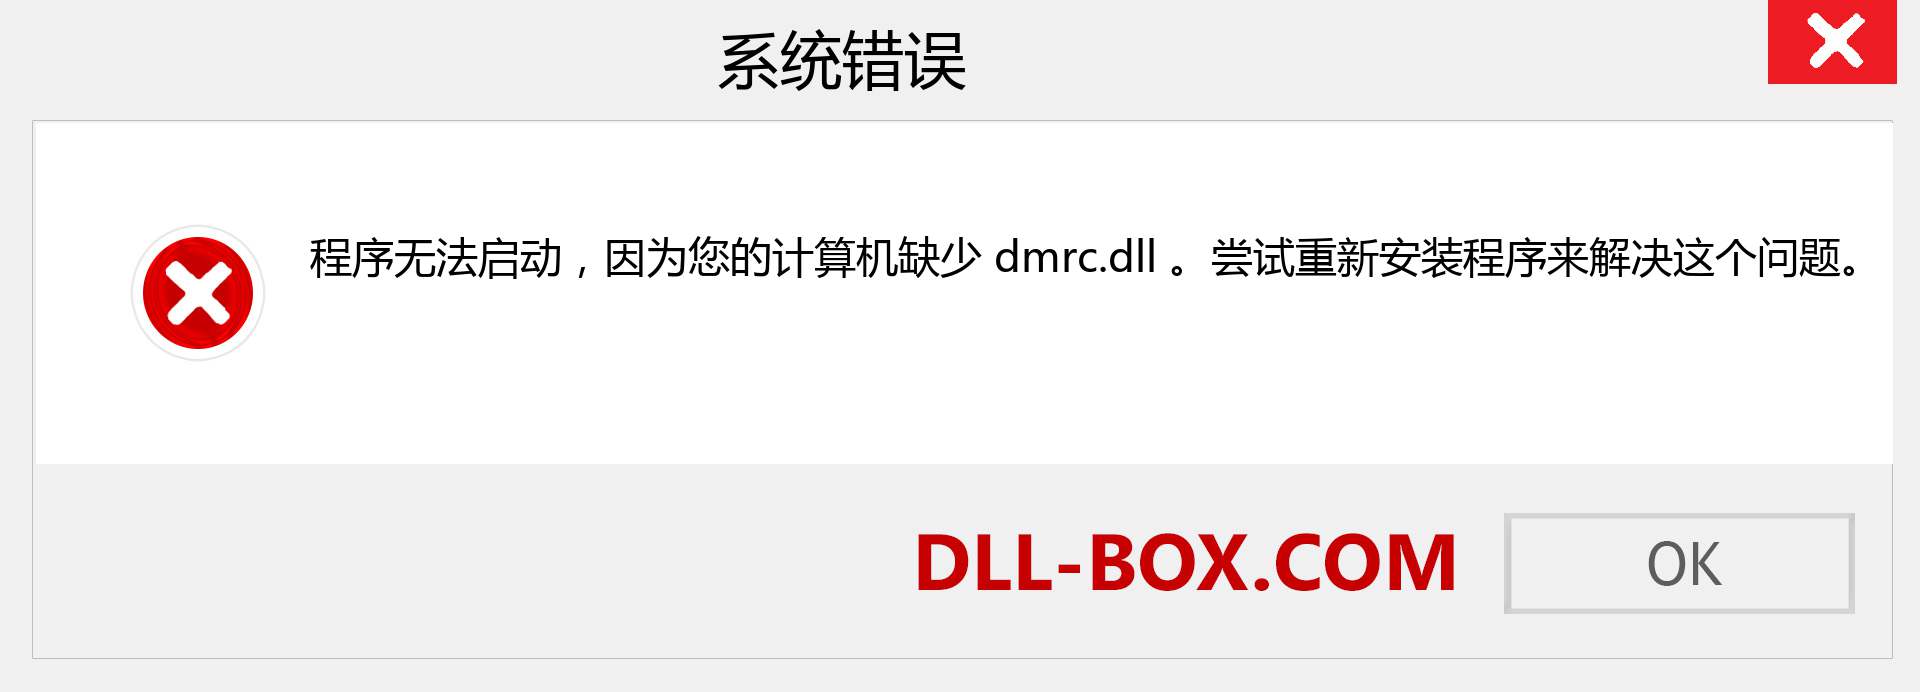 dmrc.dll 文件丢失？。 适用于 Windows 7、8、10 的下载 - 修复 Windows、照片、图像上的 dmrc dll 丢失错误